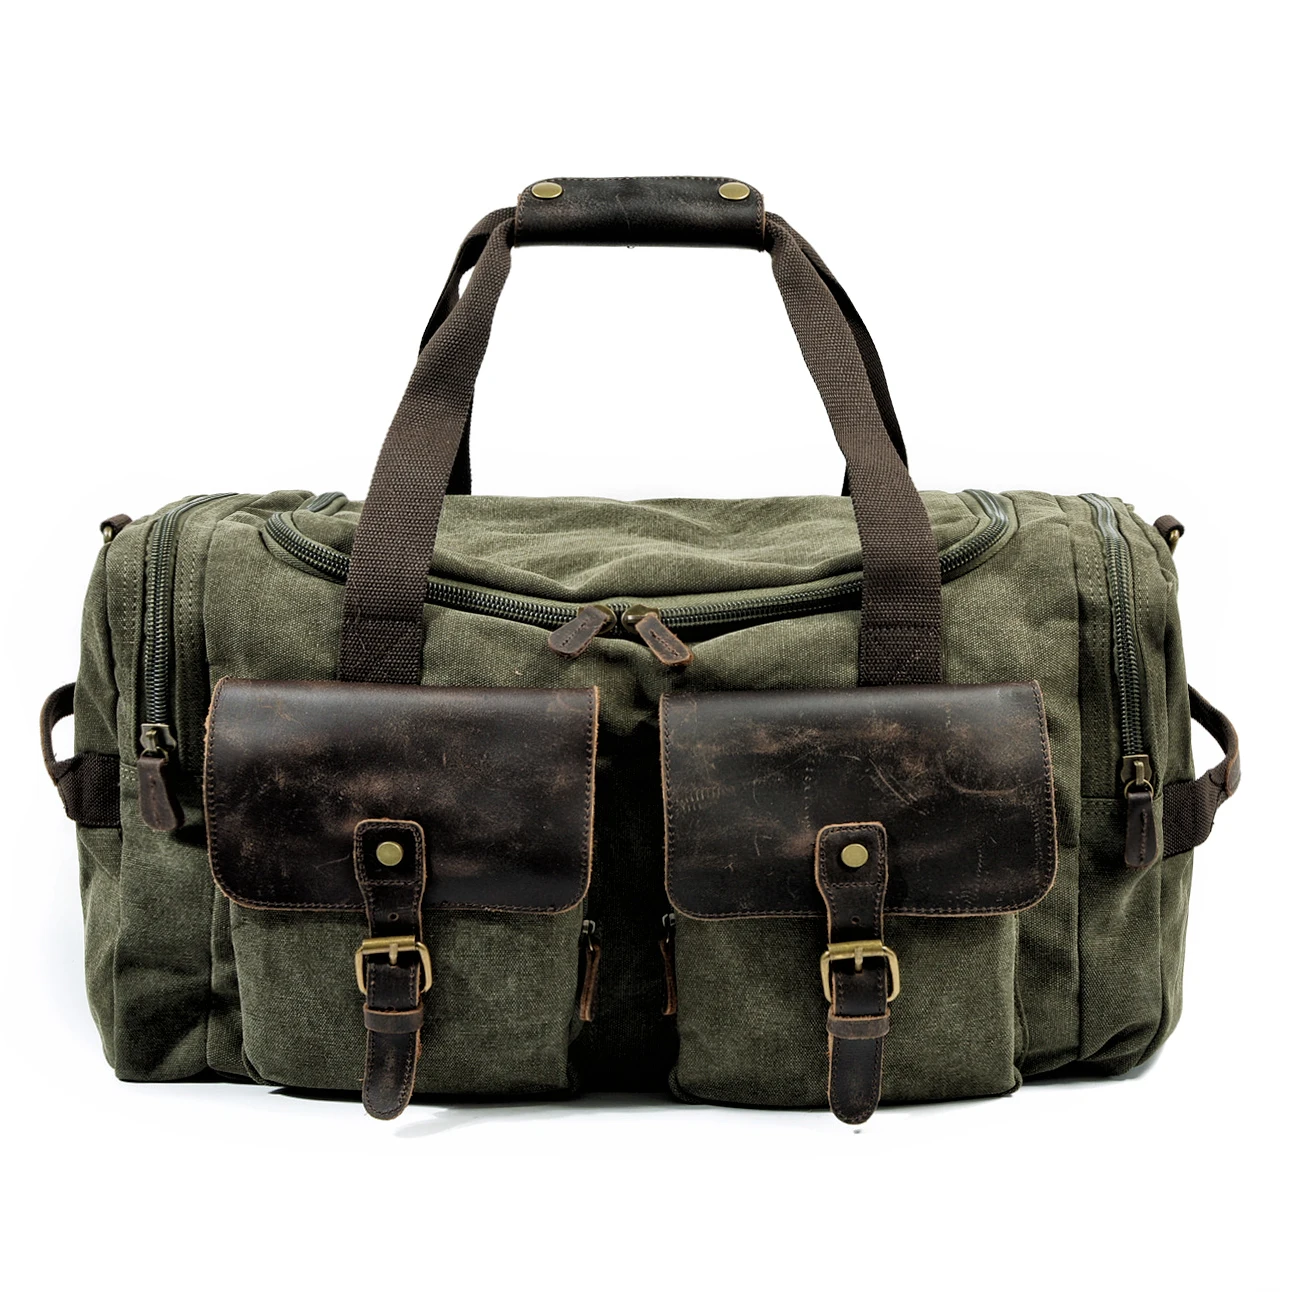 Retro canvas travel bag handbag men's business travel bag large-capacity travel sports fitness bag shoulder messenger bag